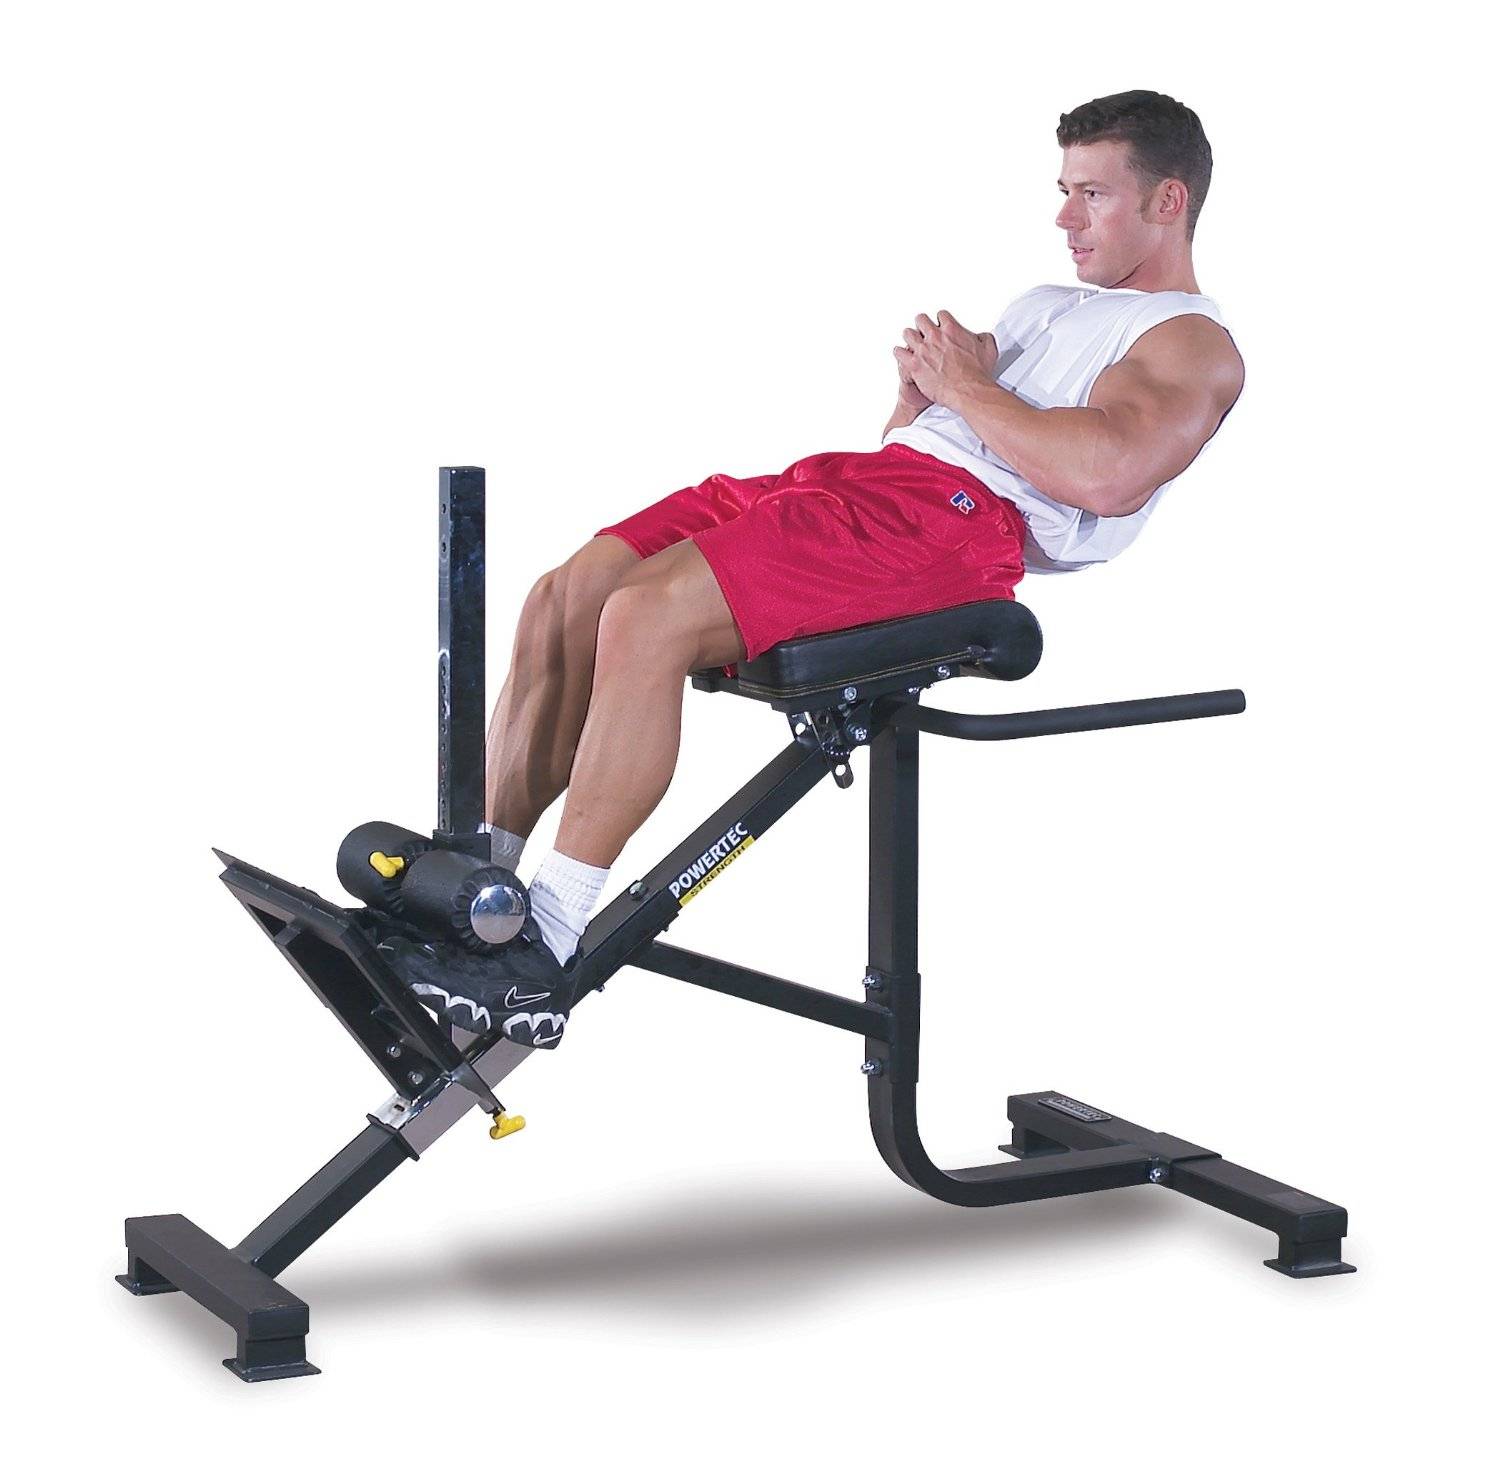 Римский стул – особенности и виды тренажера, техника упражнений